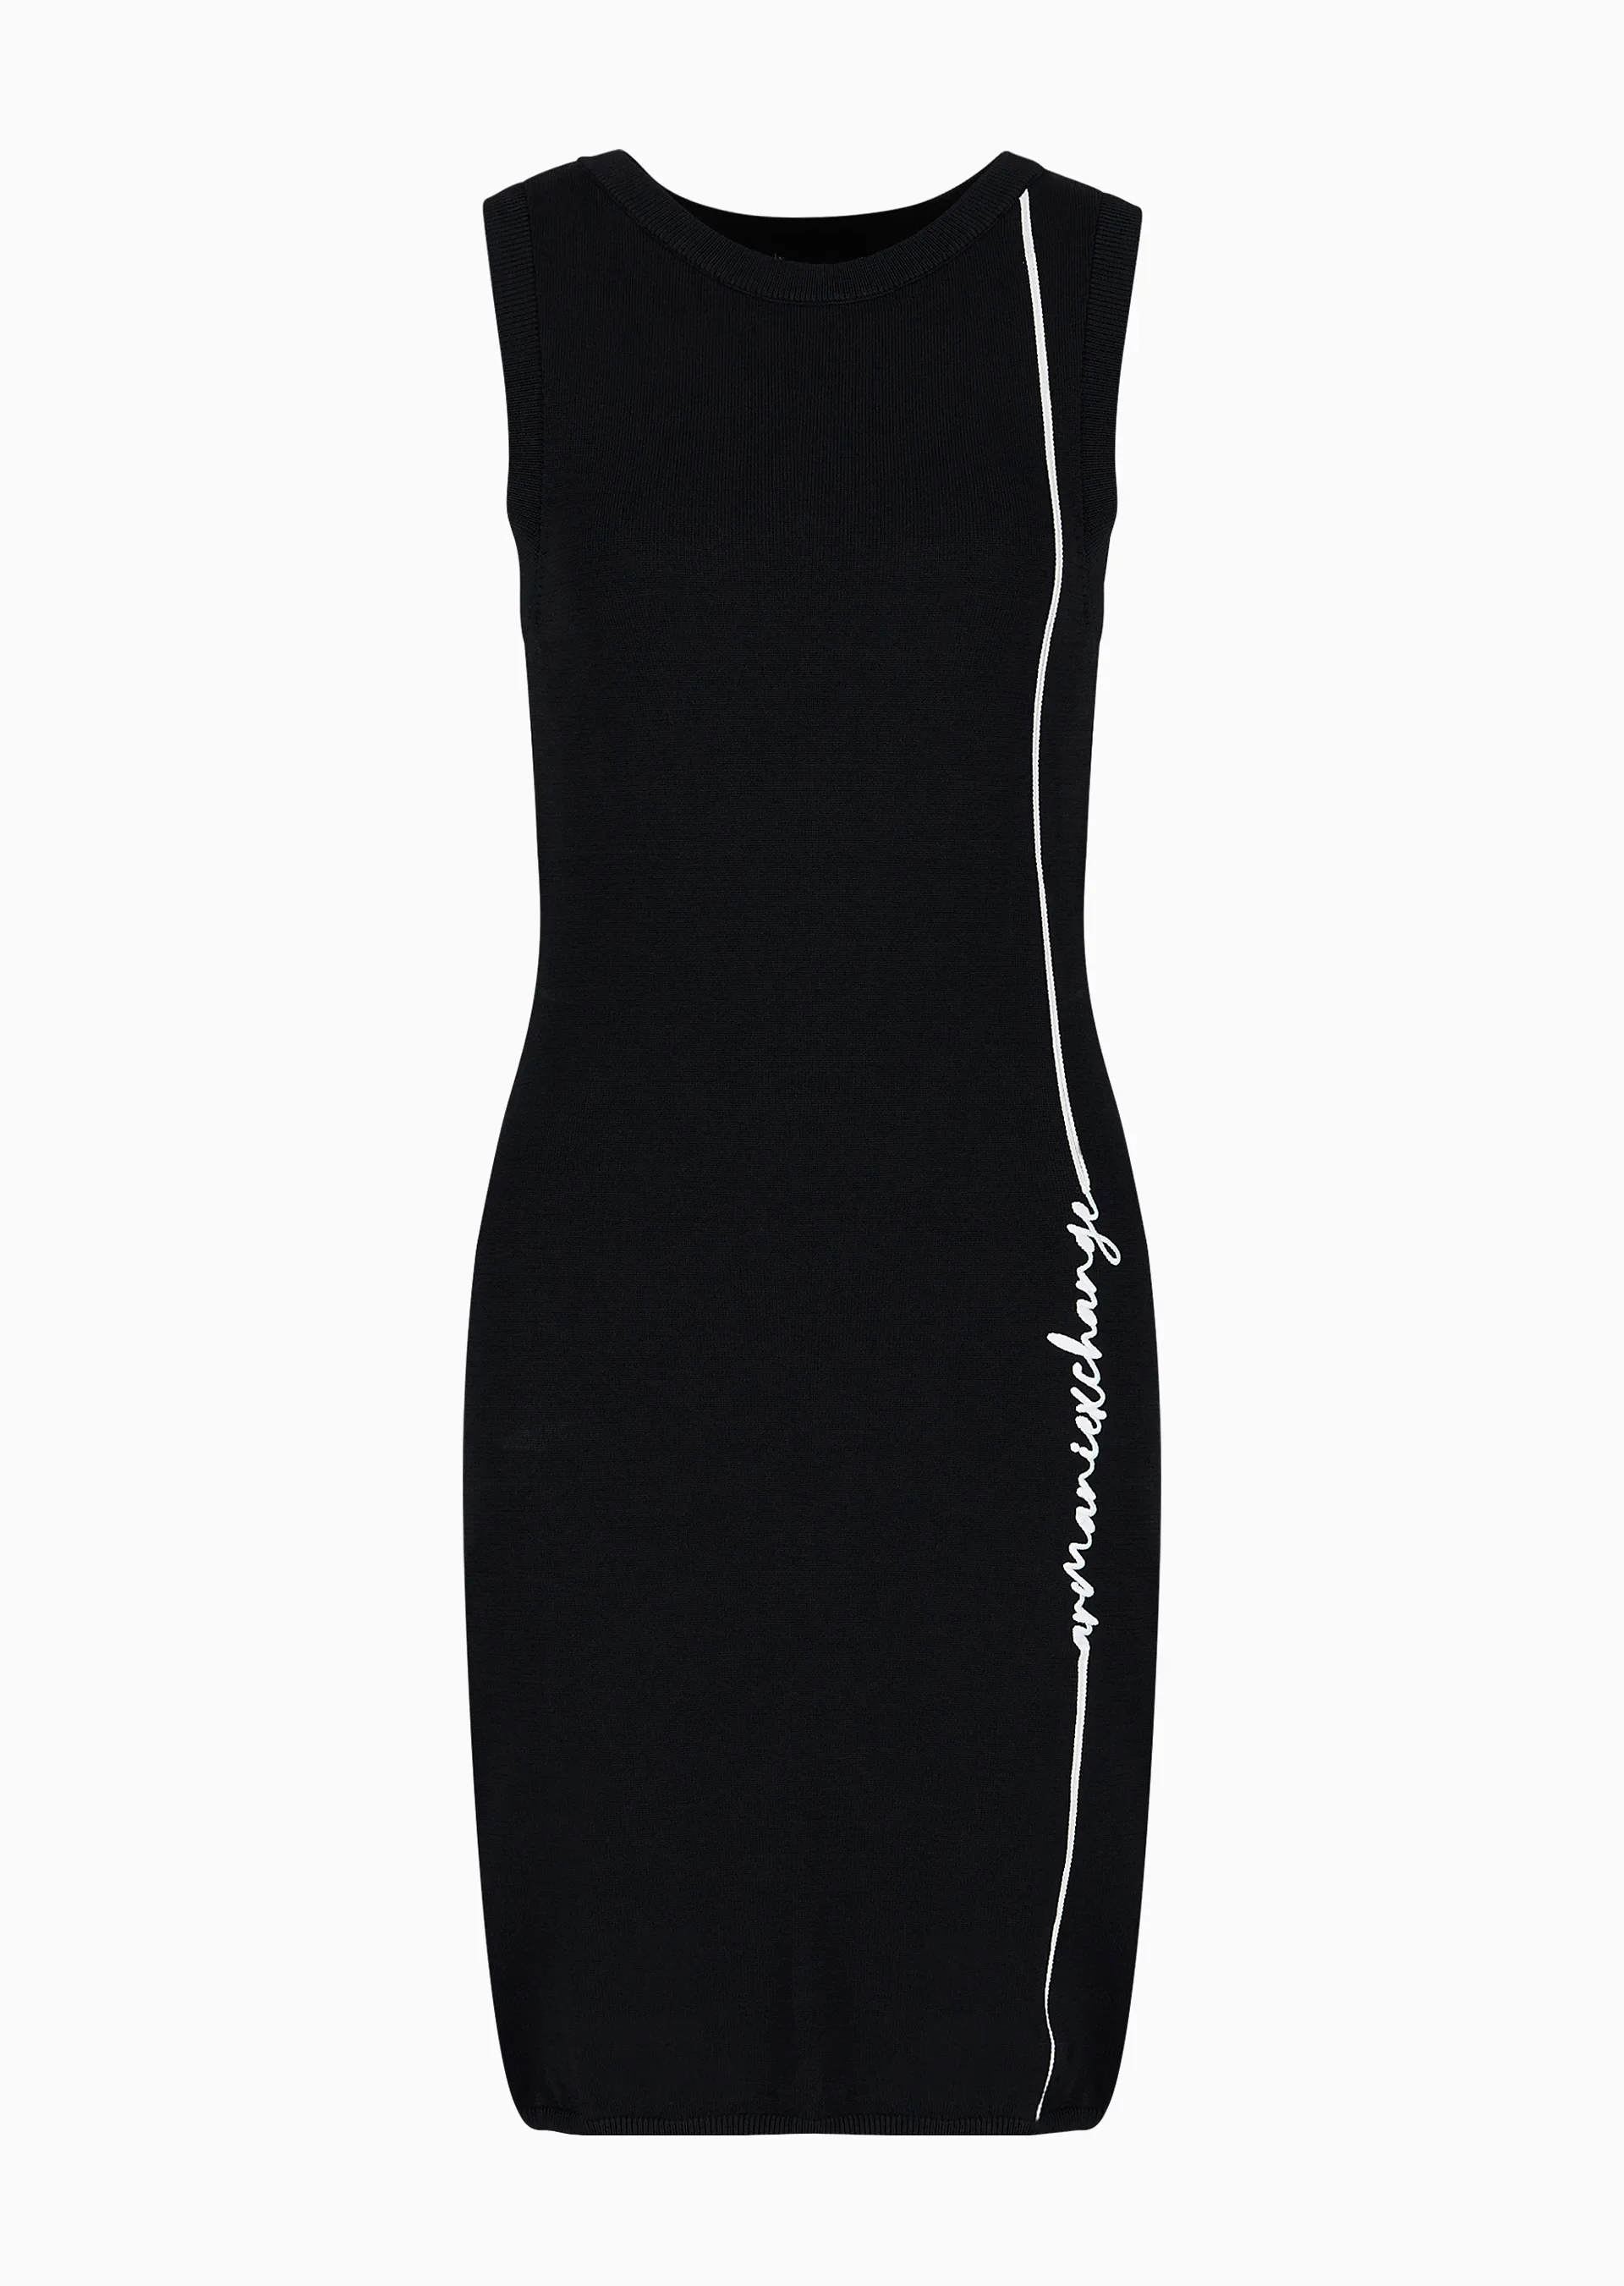 Kadın Logo Yazılı Triko Elbise-Siyah - 5